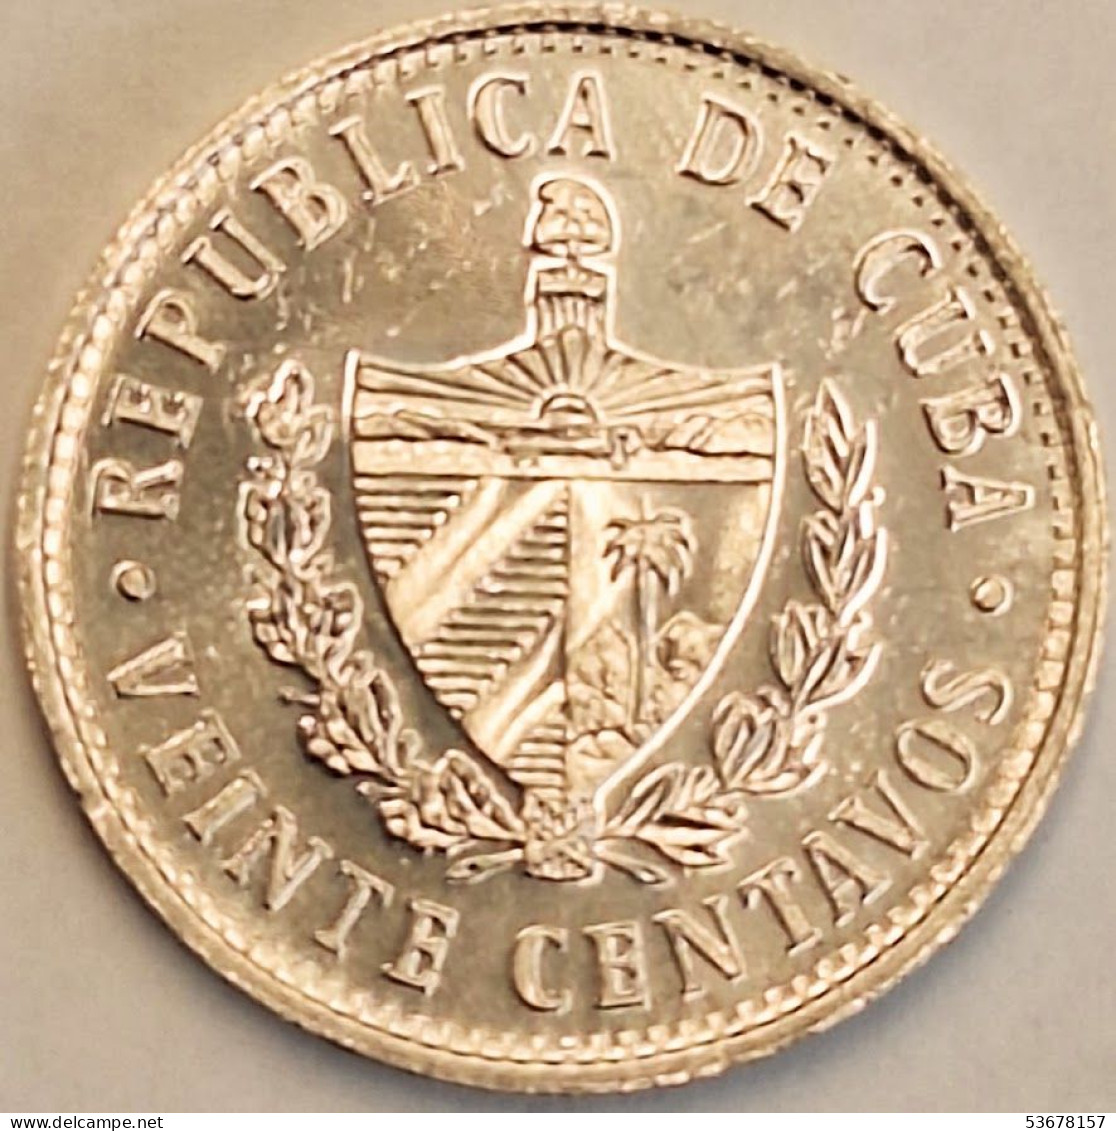 Cuba - 20 Centavos 2002, KM# 35.1 (#3577) - Cuba